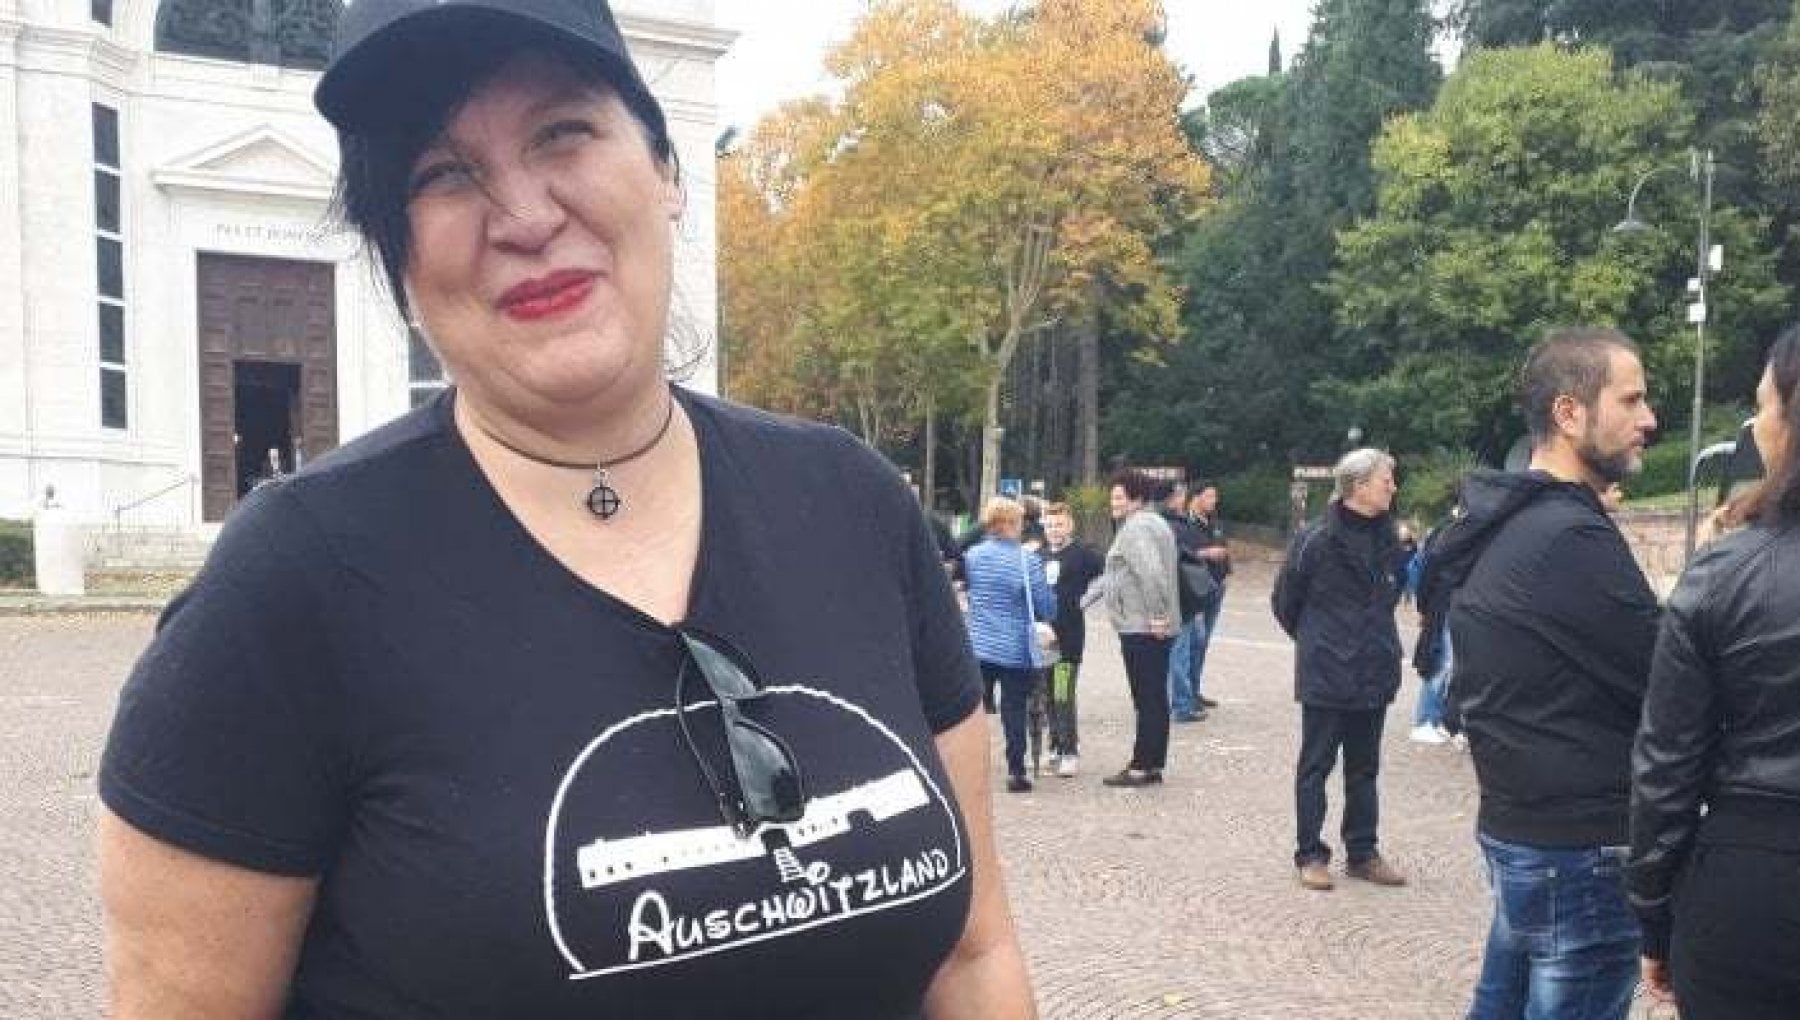 Fascista indossò la maglietta con scritto "Auschwitzland": il tribunale la assolve